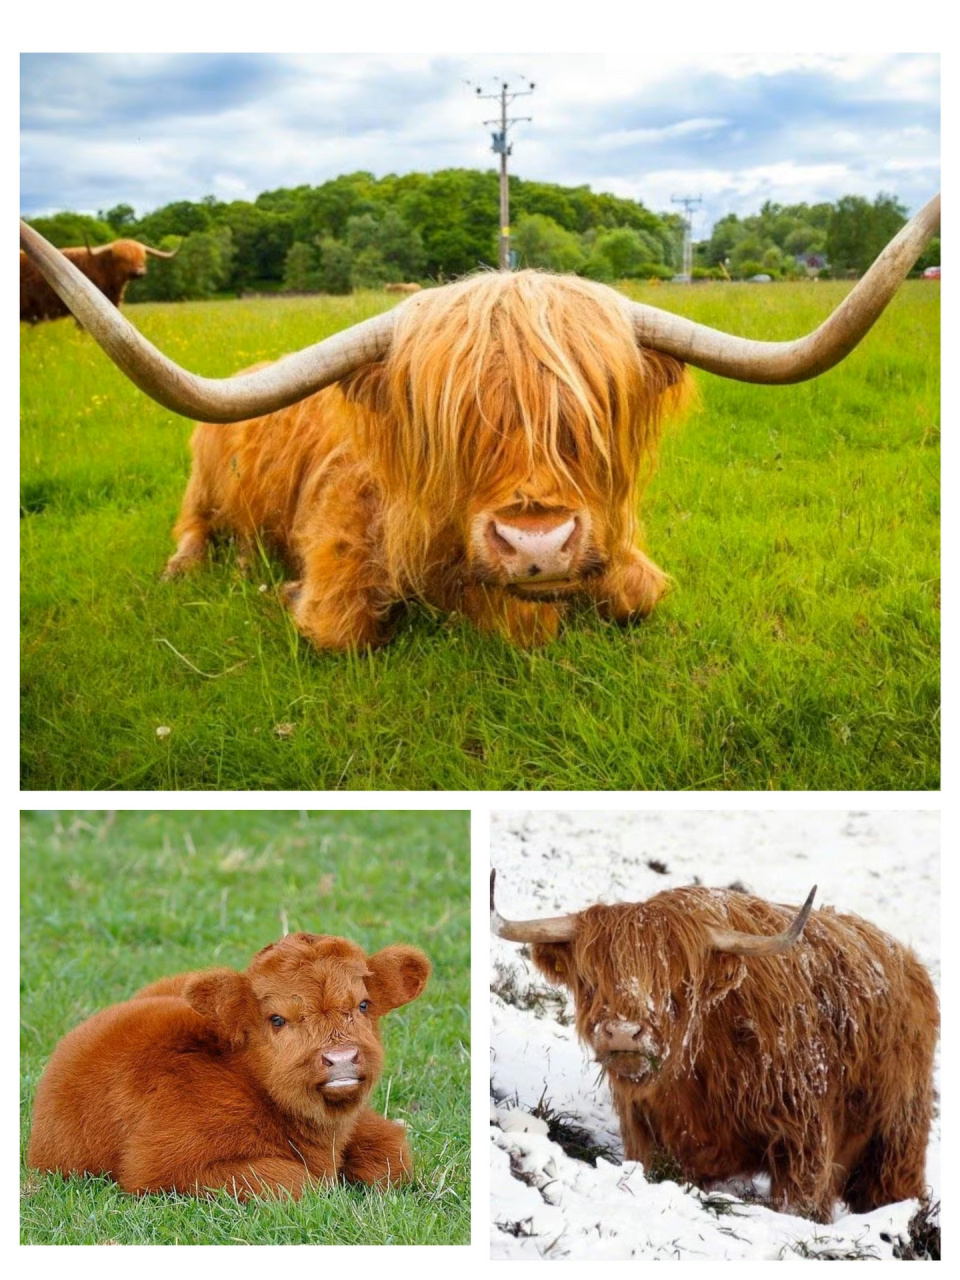 非主牛～  苏格兰高地牛90 苏格兰高地牛是大型偶蹄类动物,全身披着